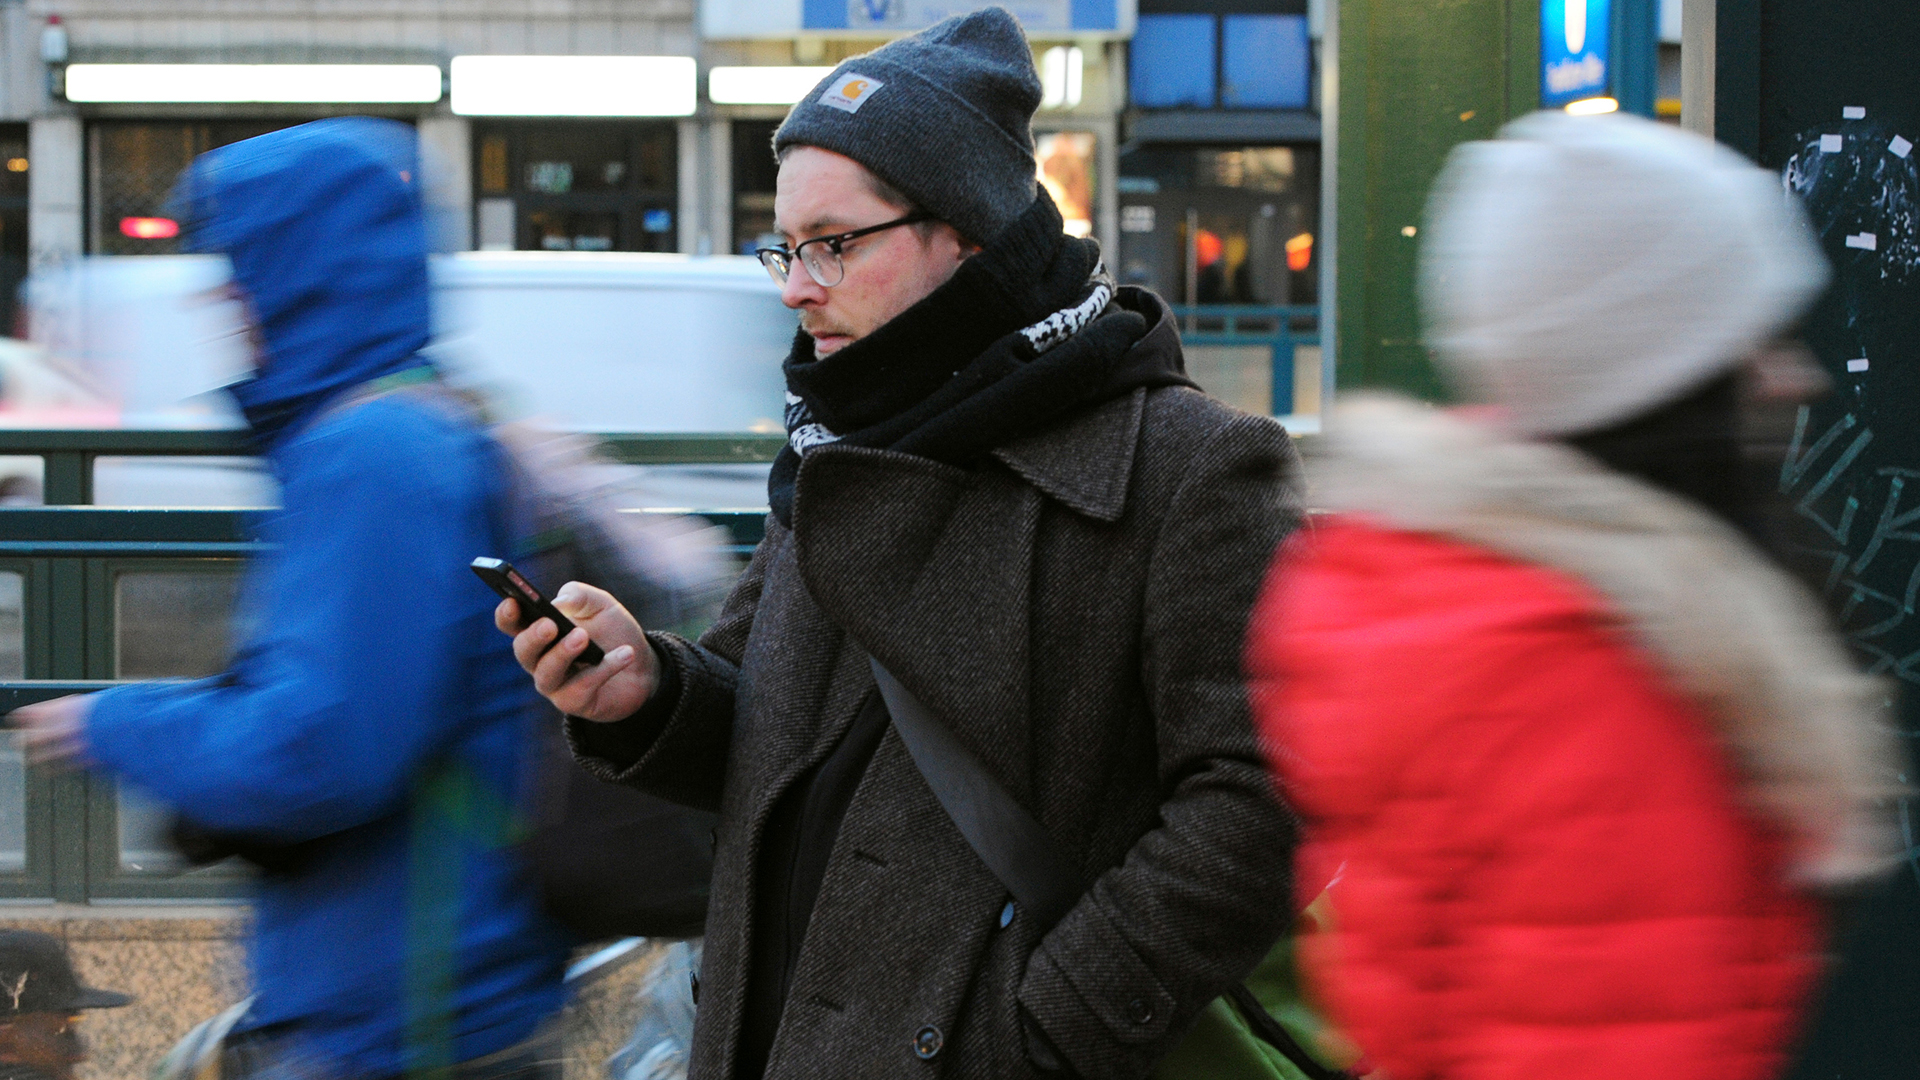 Ein junger Mann mit dem Blick auf sein Smartphone gerichtet an einer Straße in Berlin | picture alliance / dpa